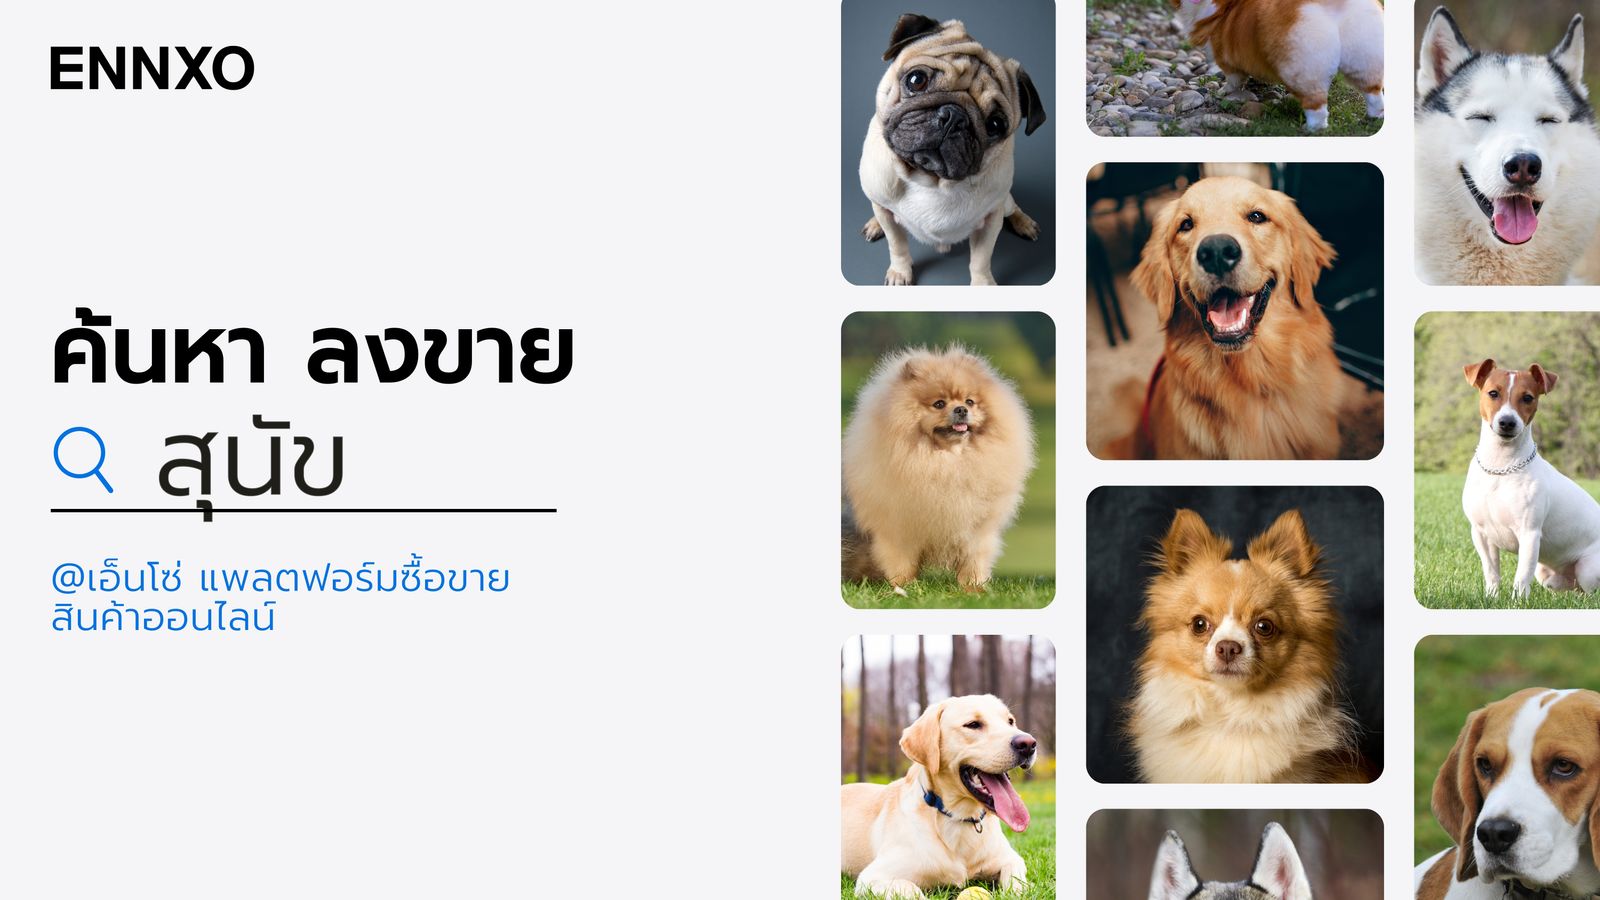 ENNXO ตลาดซื้อขาย สุนัข ออนไลน์ ที่นี่มีหมาหลายสายพันธุ์ให้เลือกดู